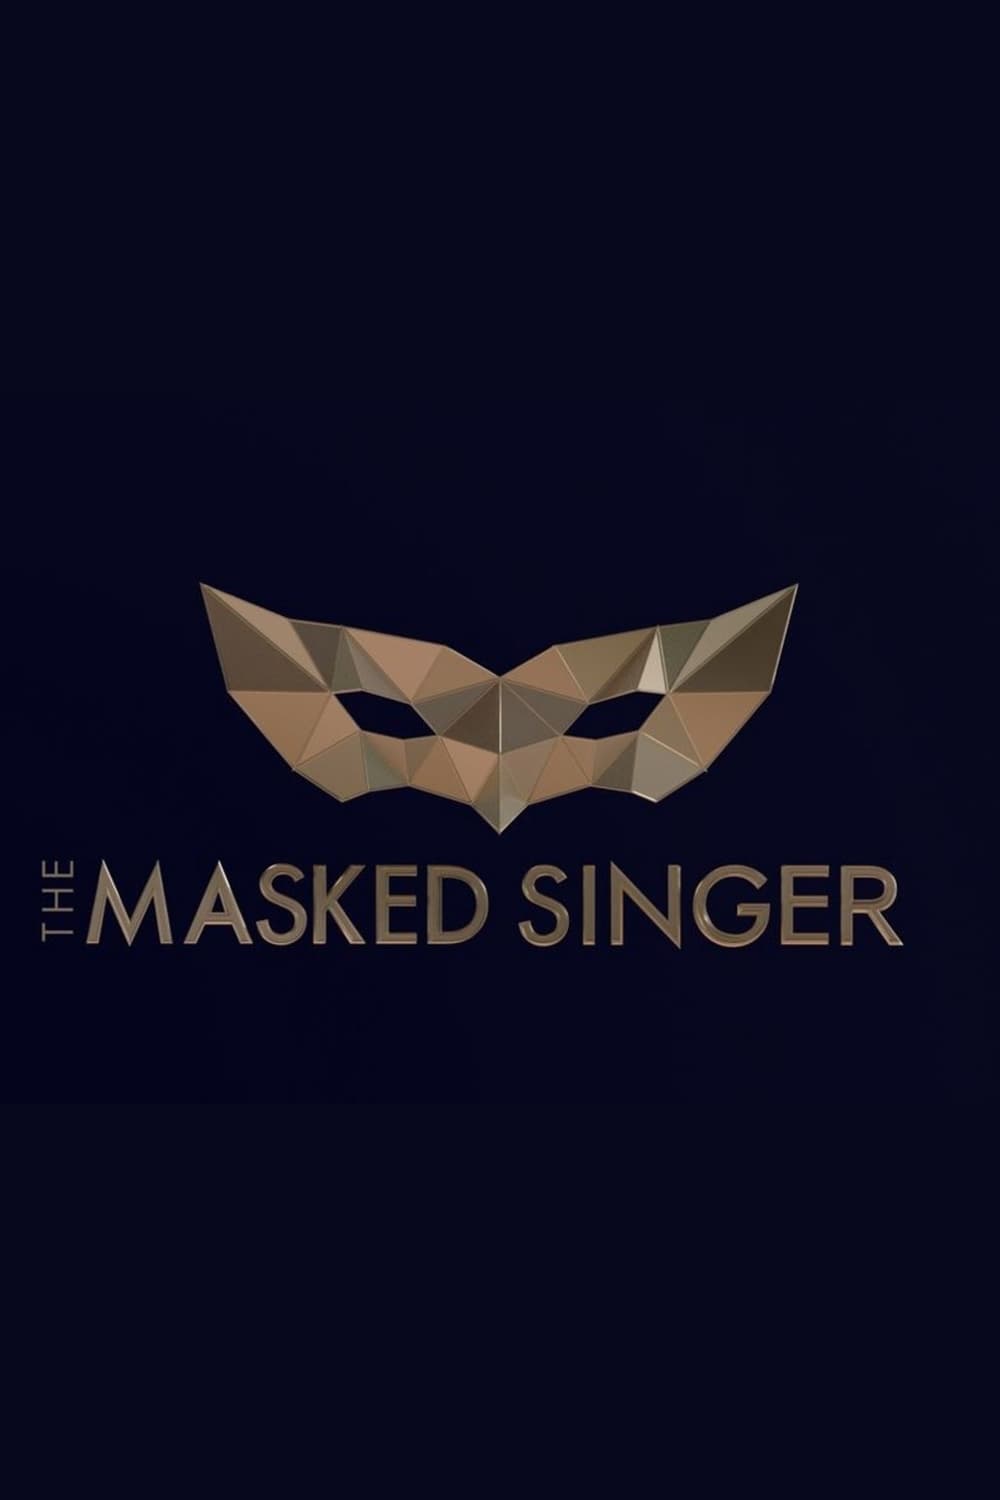 The Masked Singer (2019)